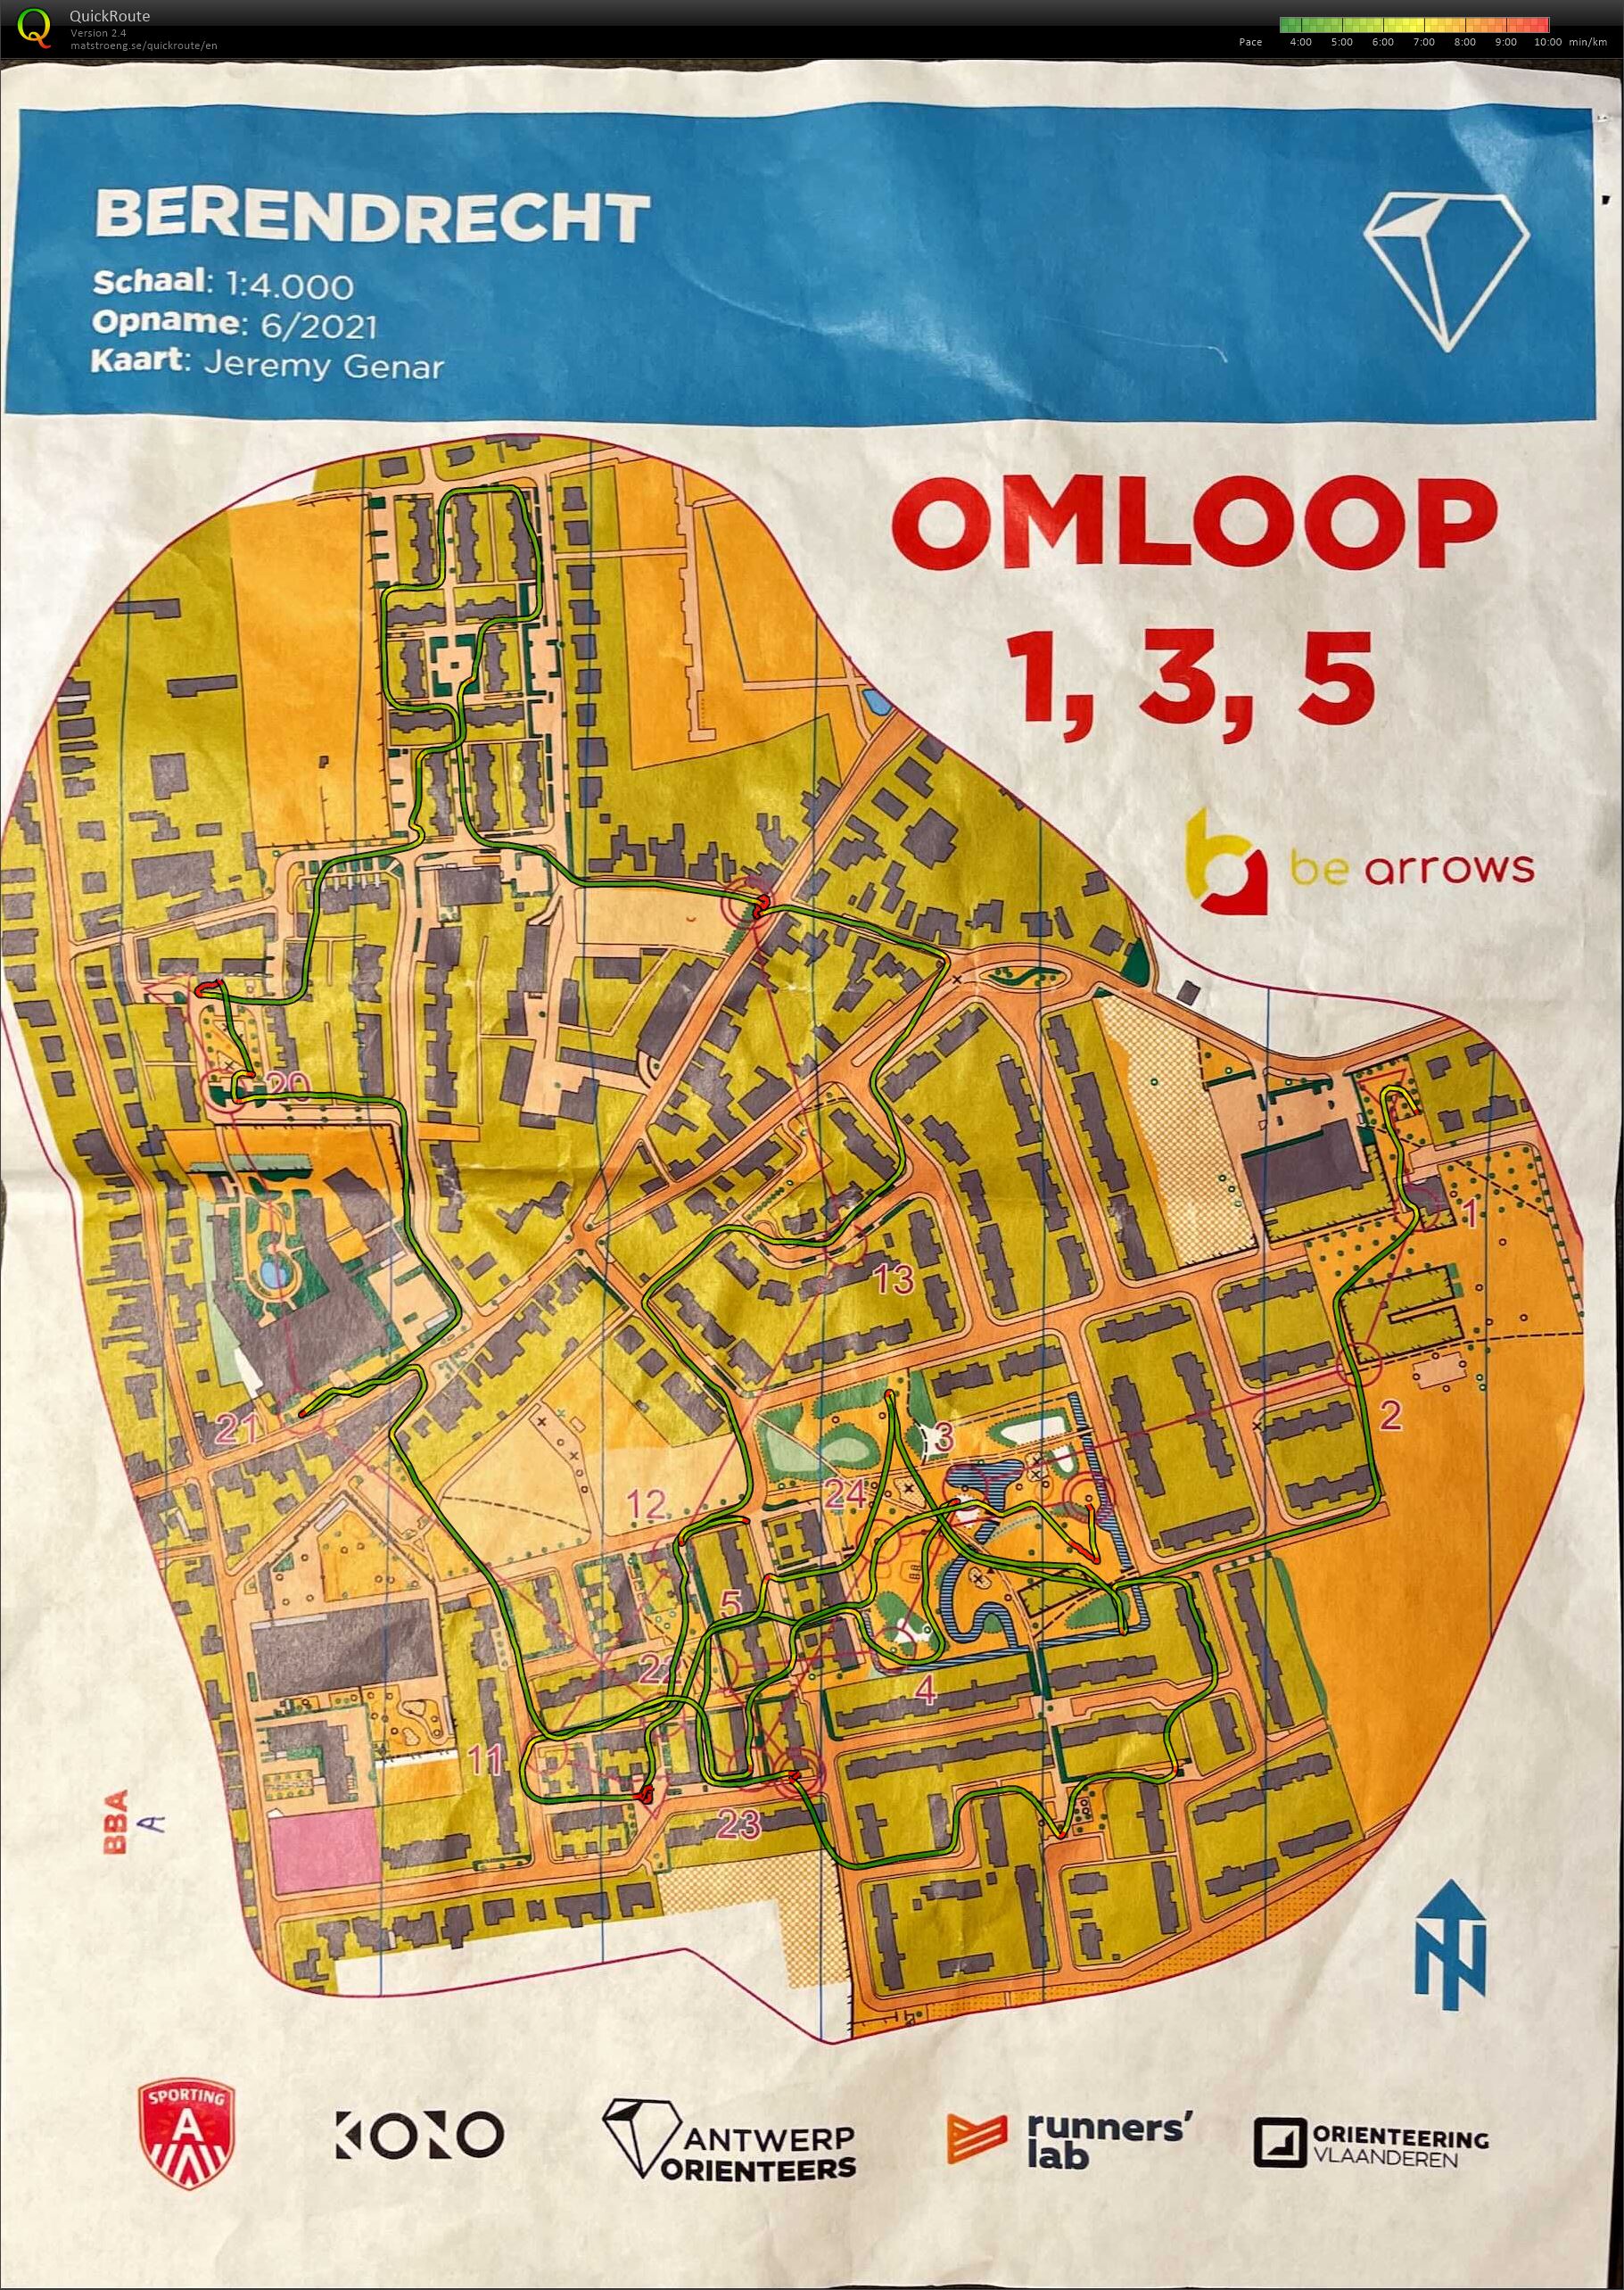 Berendrecht - Omloop 1,3,5 (11-06-2021)